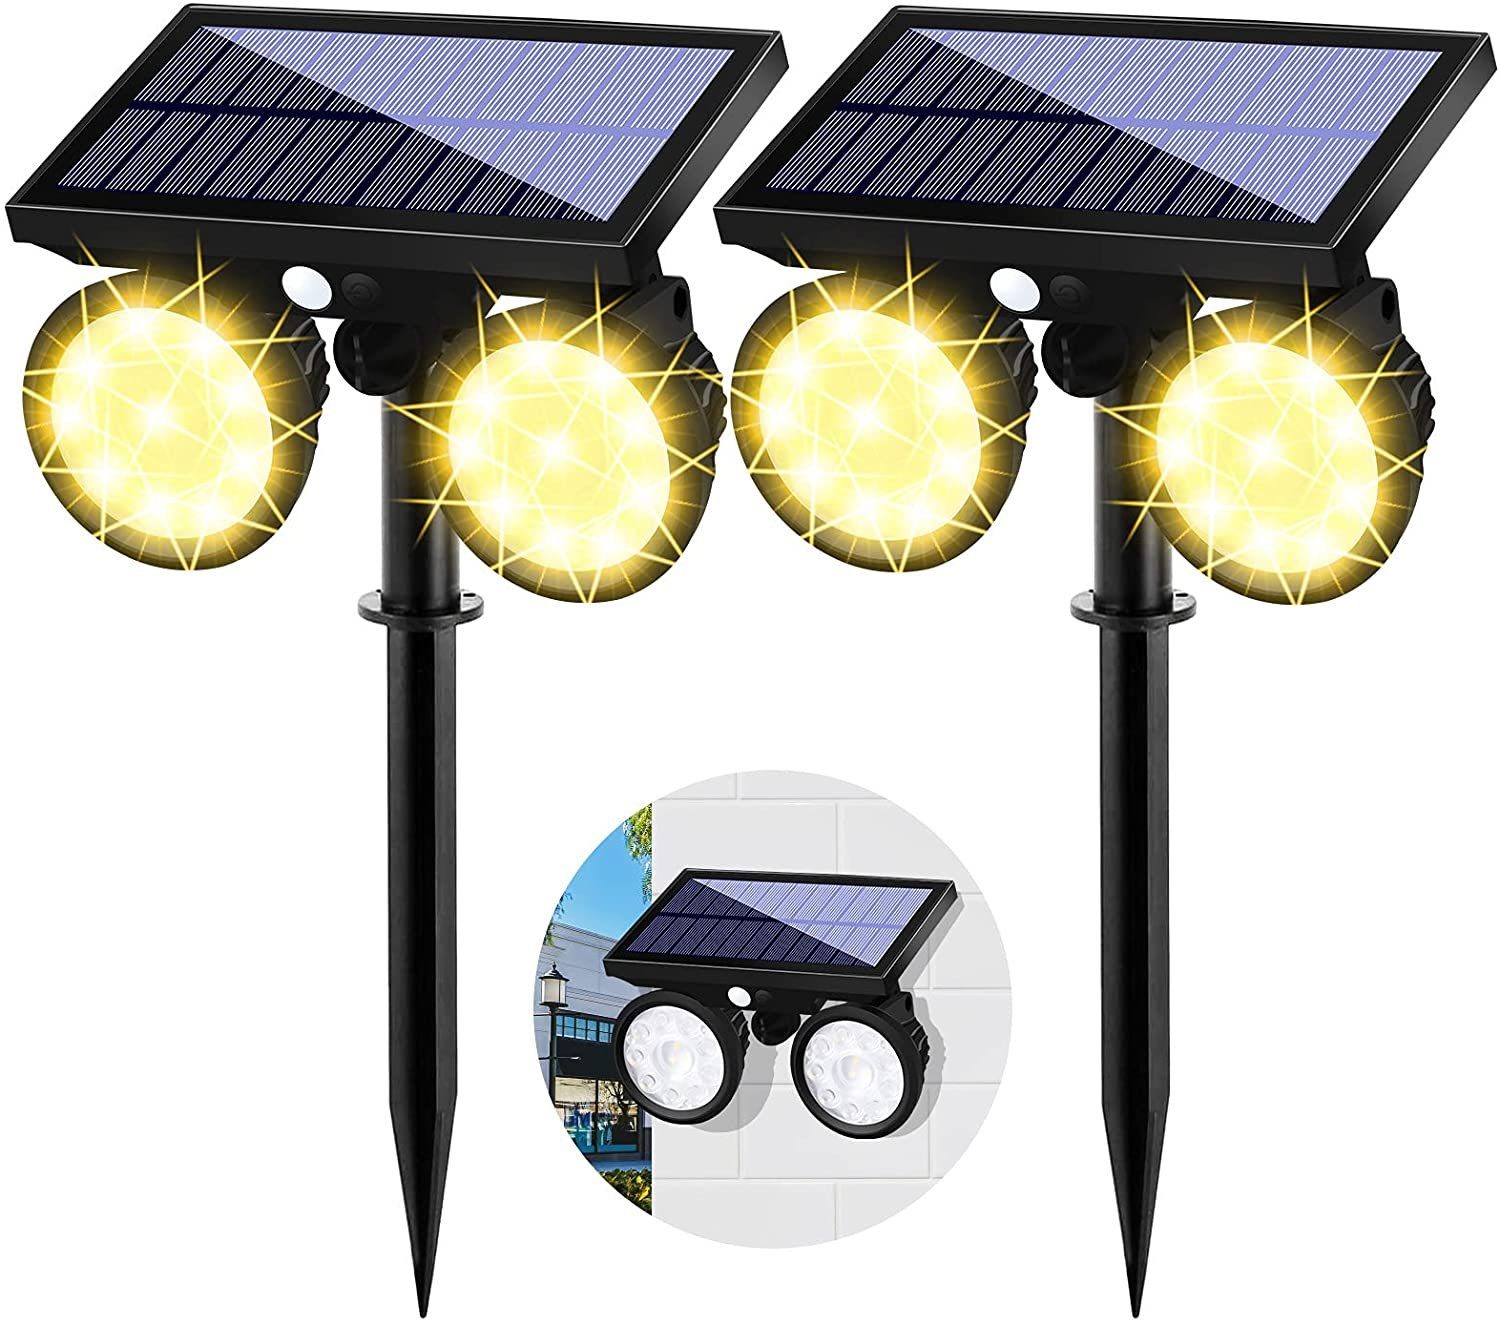 2 x LED Solarleuchten Solarstrahler Gartenstrahler Solar Lampen Solarbeleuchtung 